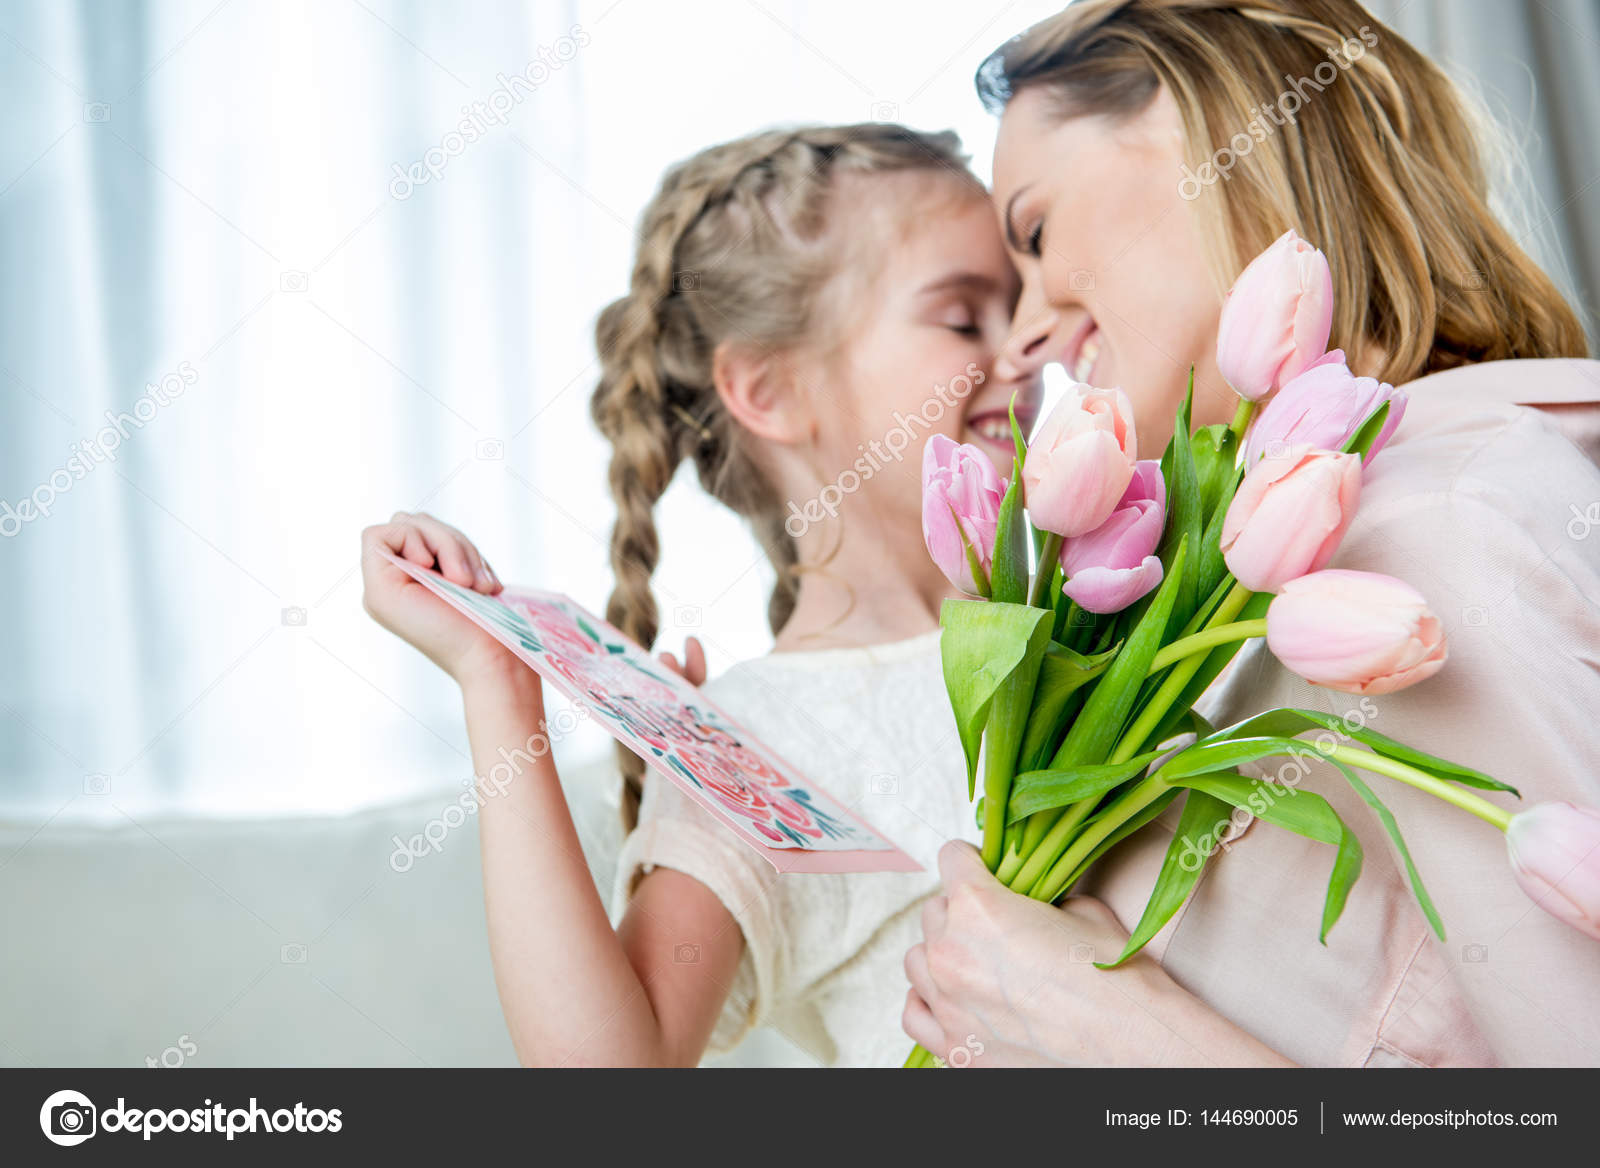 Праздник для мам и девочек. День матери. Ребенок дарит цветы маме. С днем мамы. Мамин день.